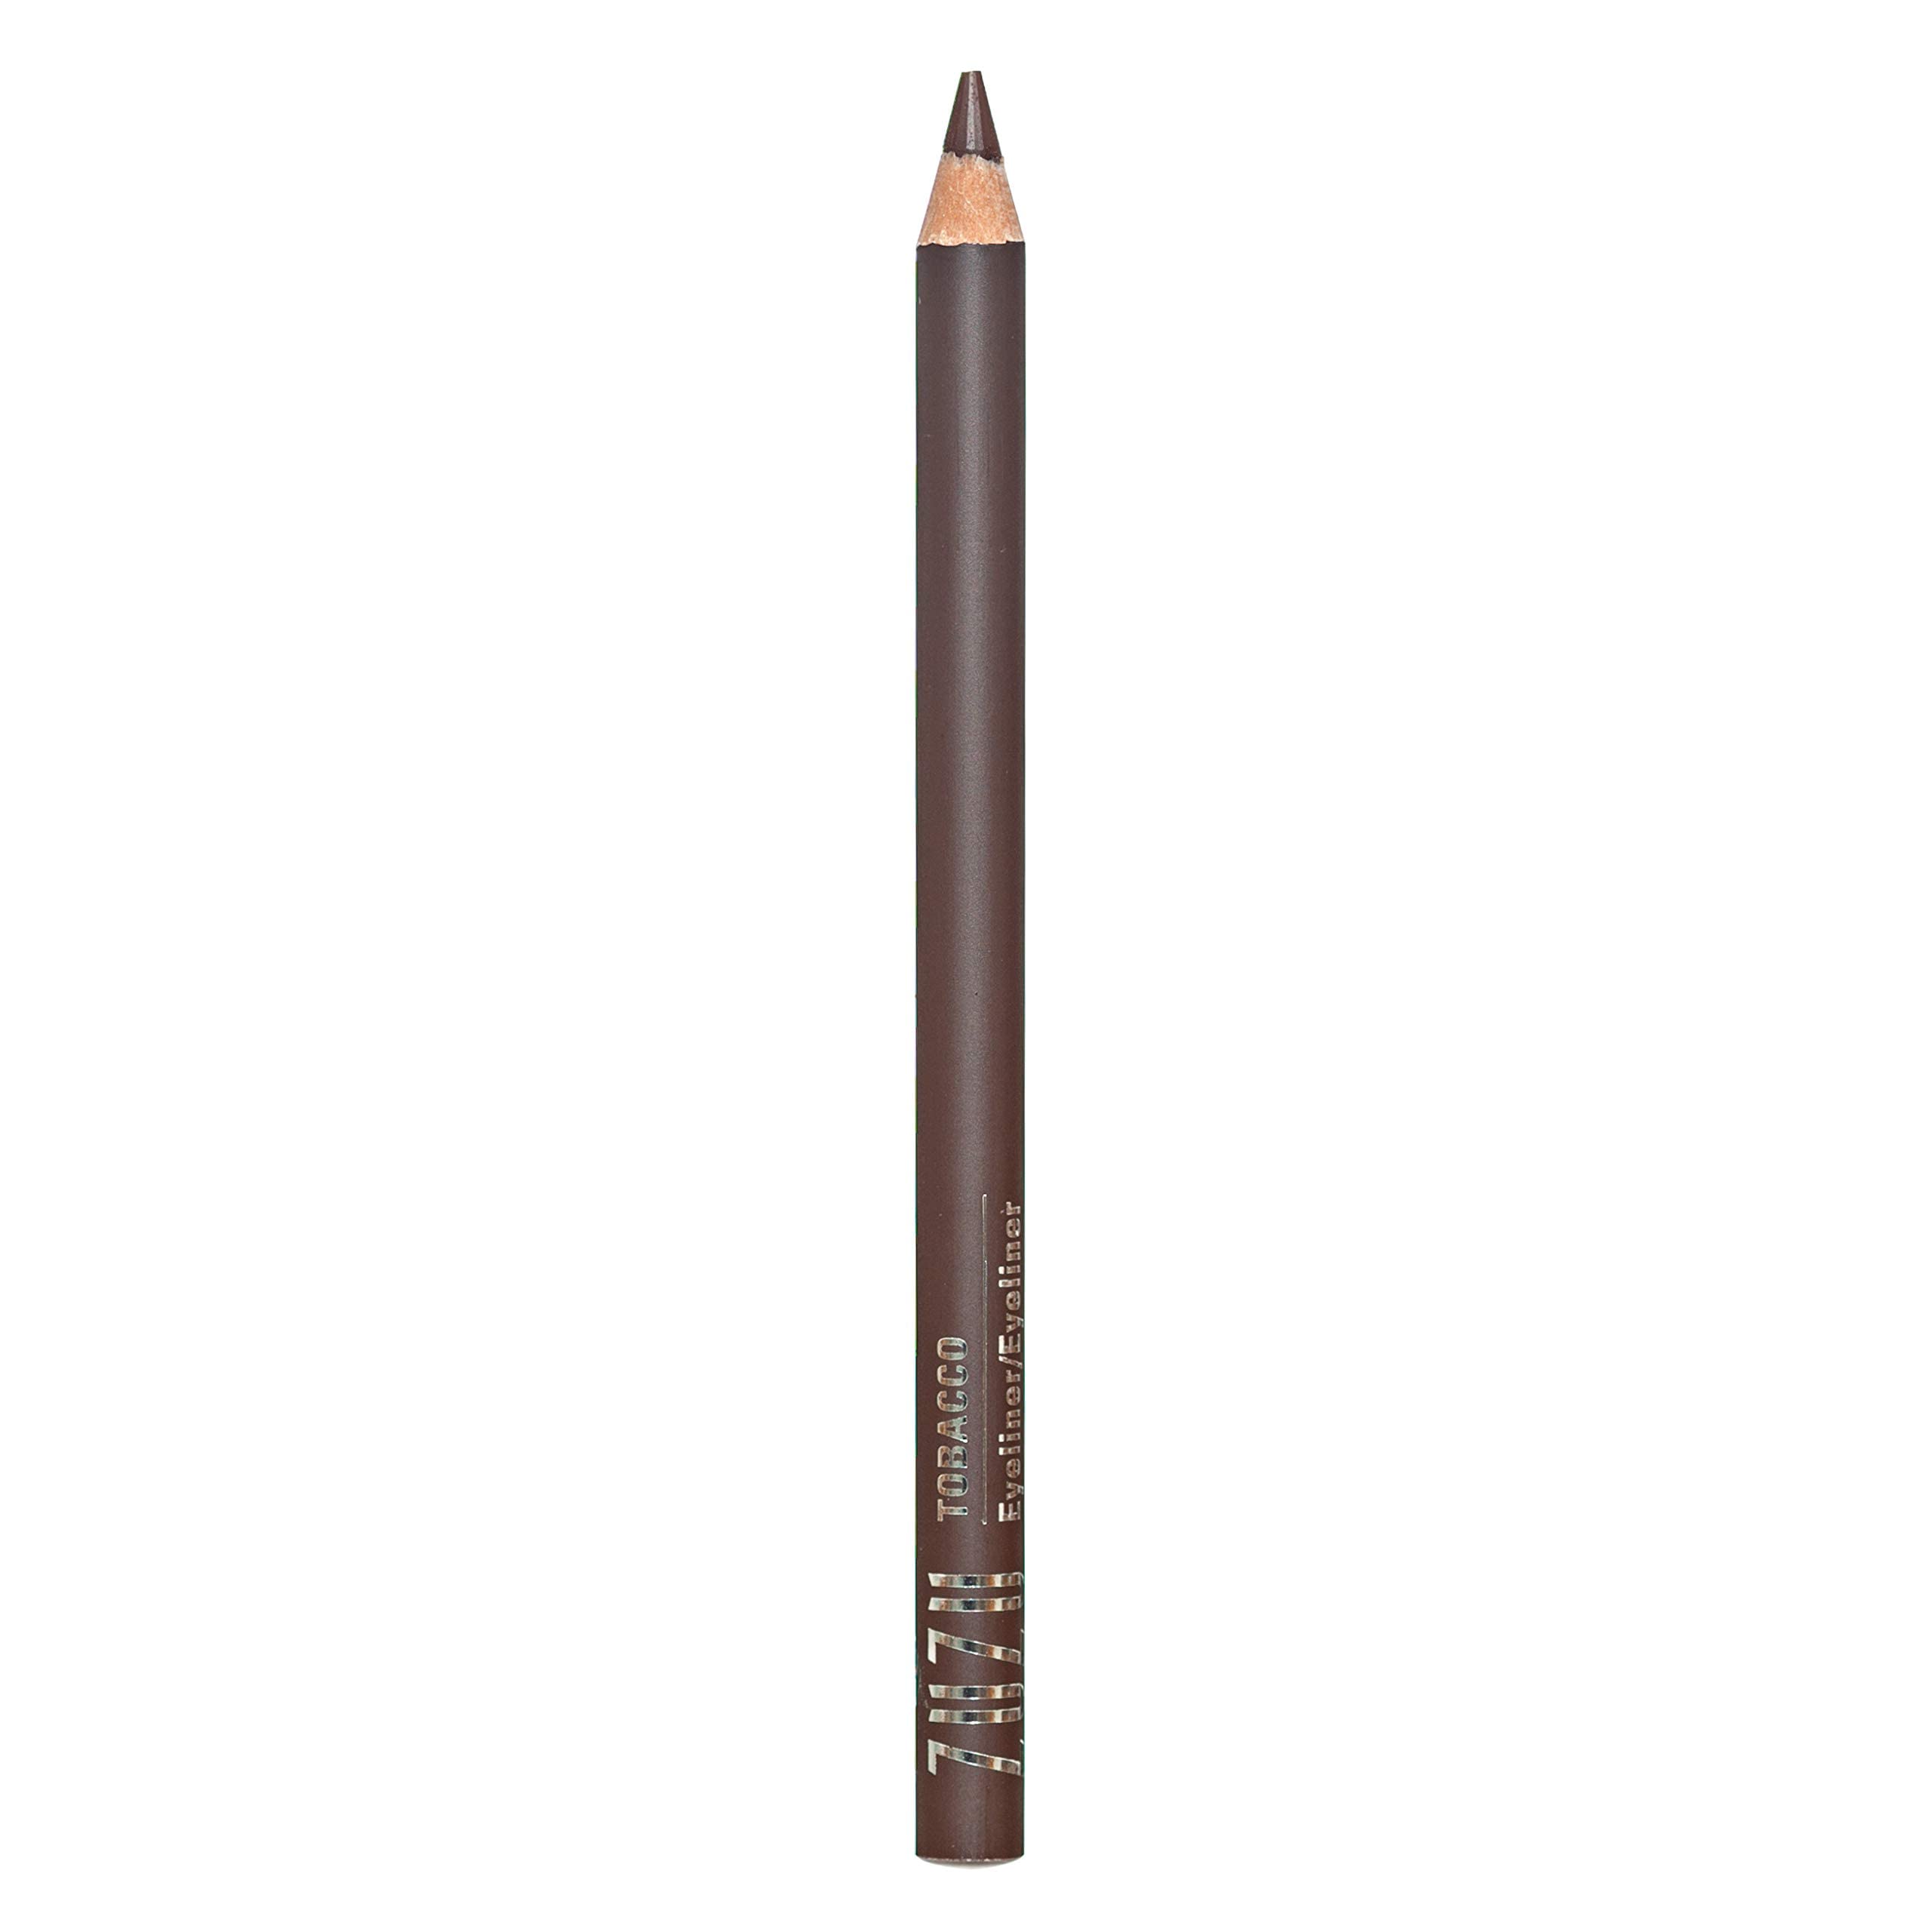 Zuzu Luxe Eye Defining Pencil (Tobacco - Brown)